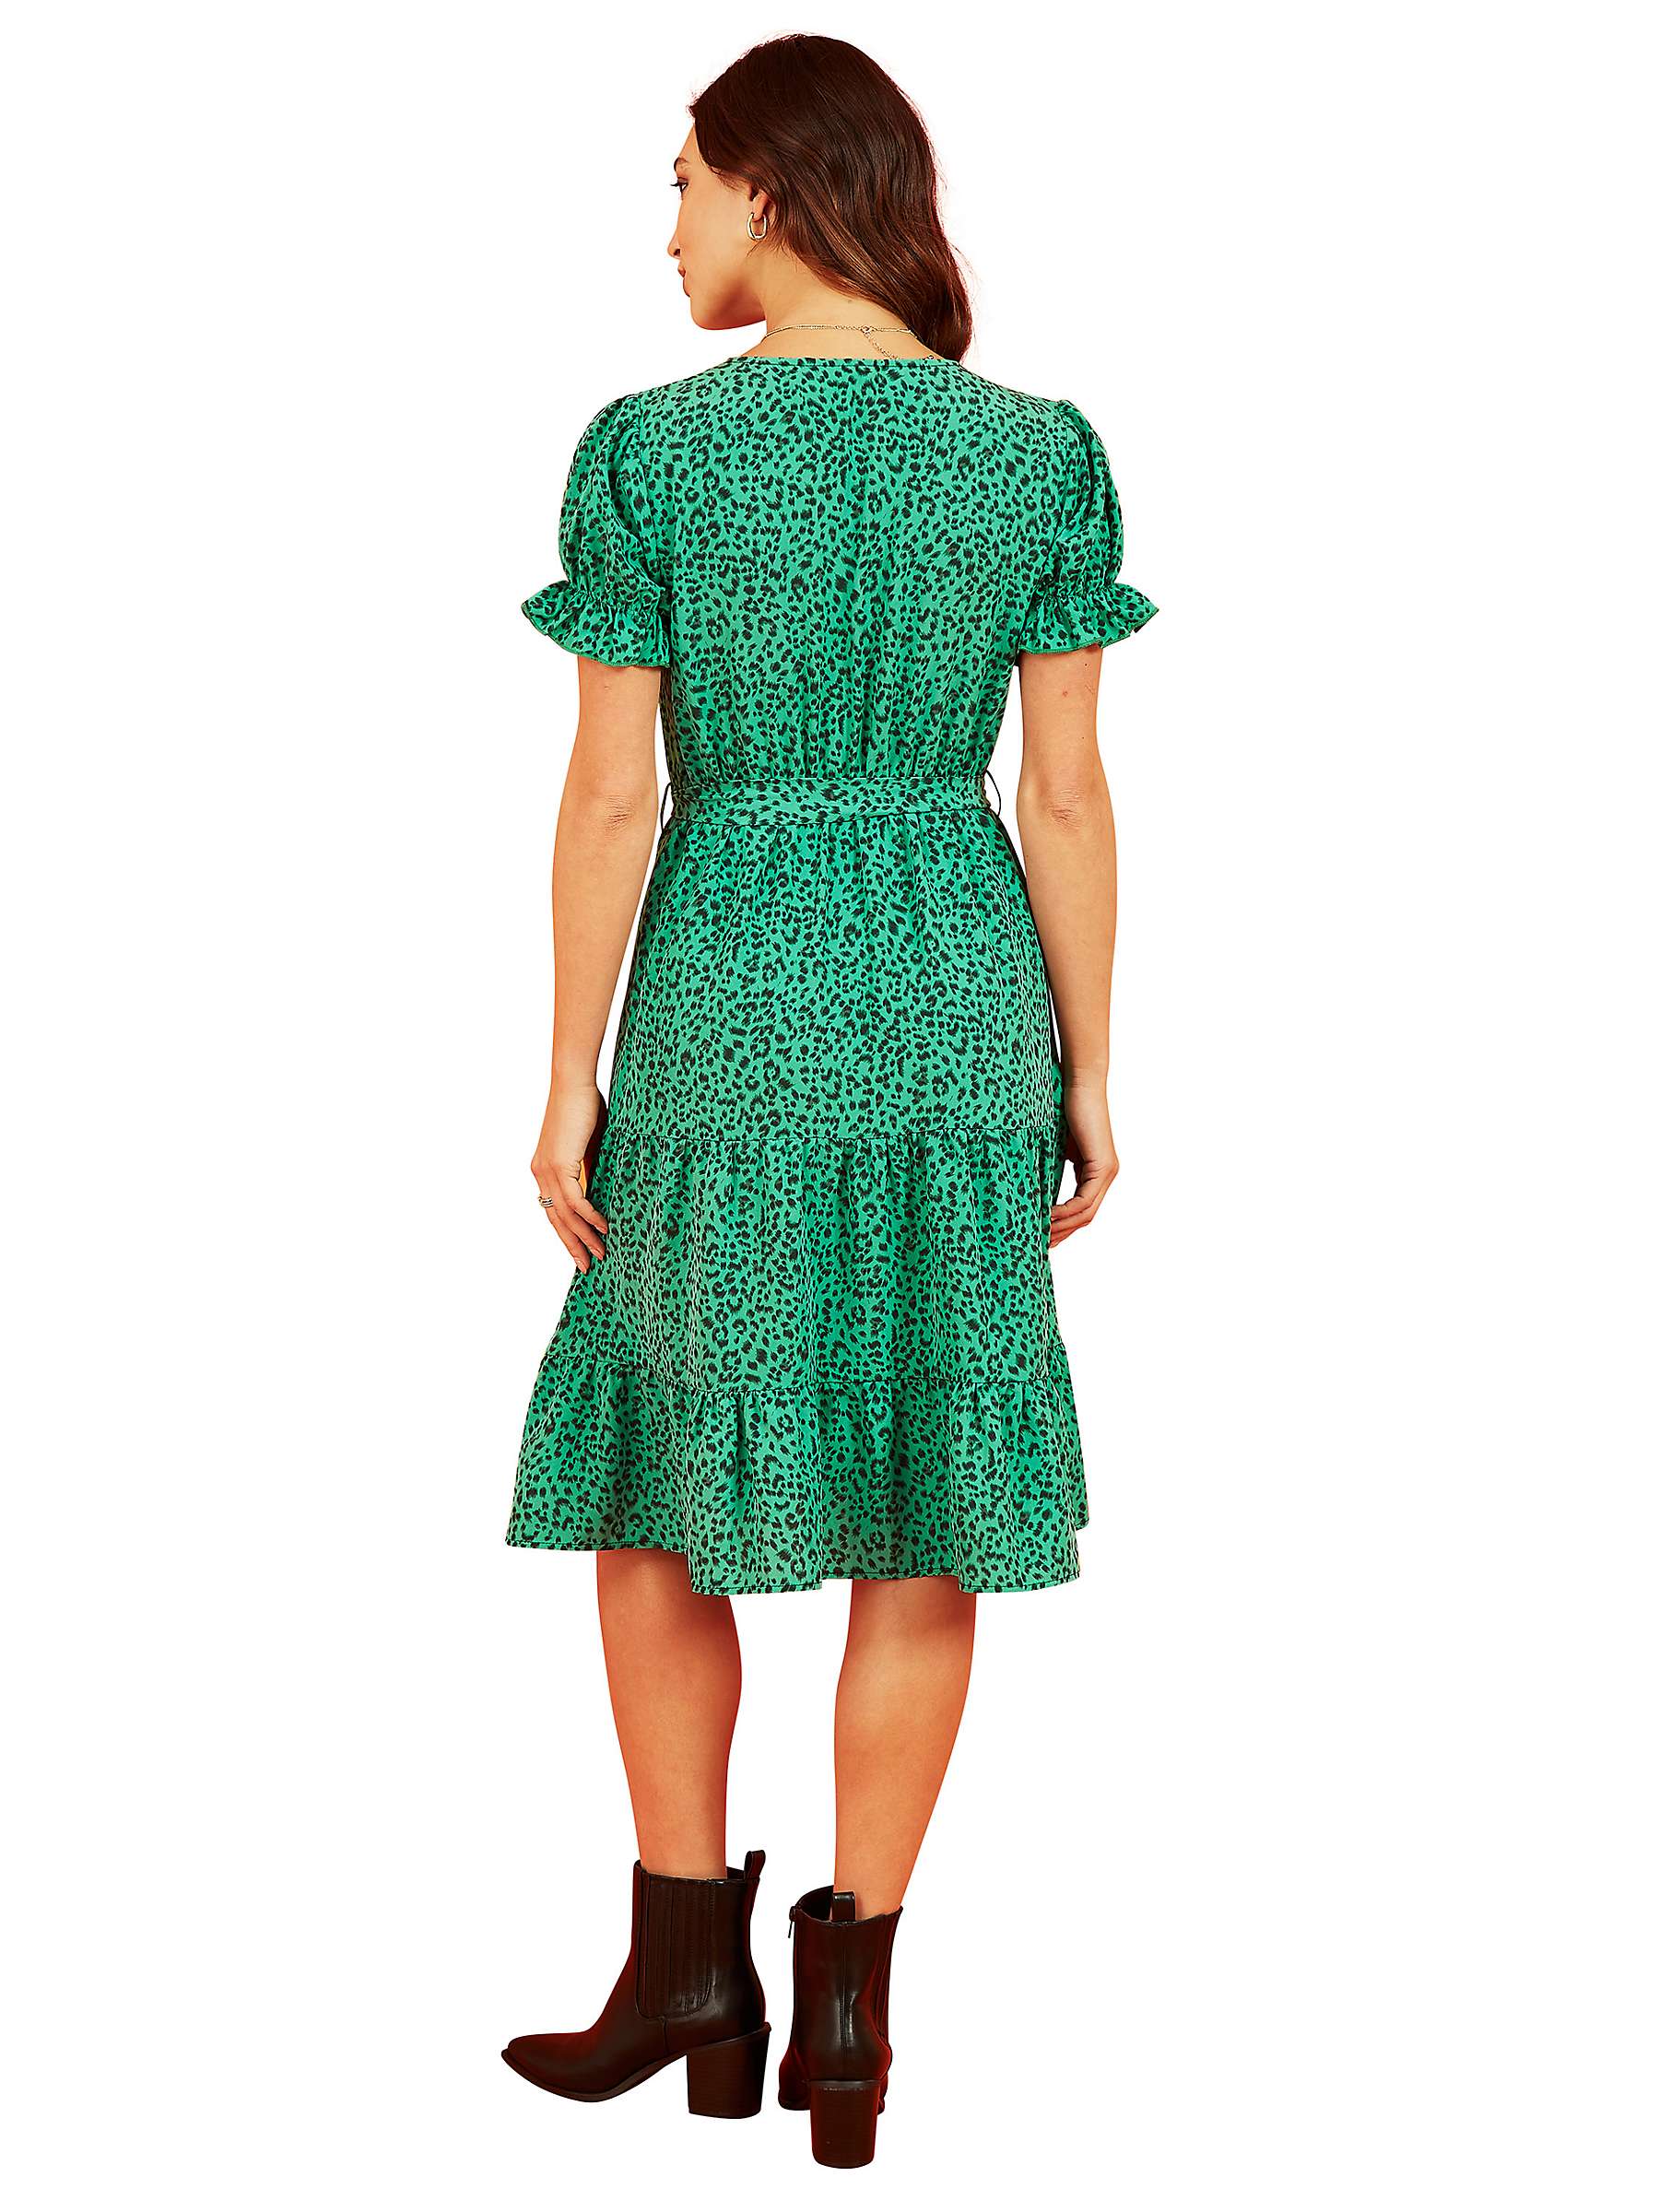 Buy Mela London Animal Print Skater Style Dress, Green/Black Online at johnlewis.com